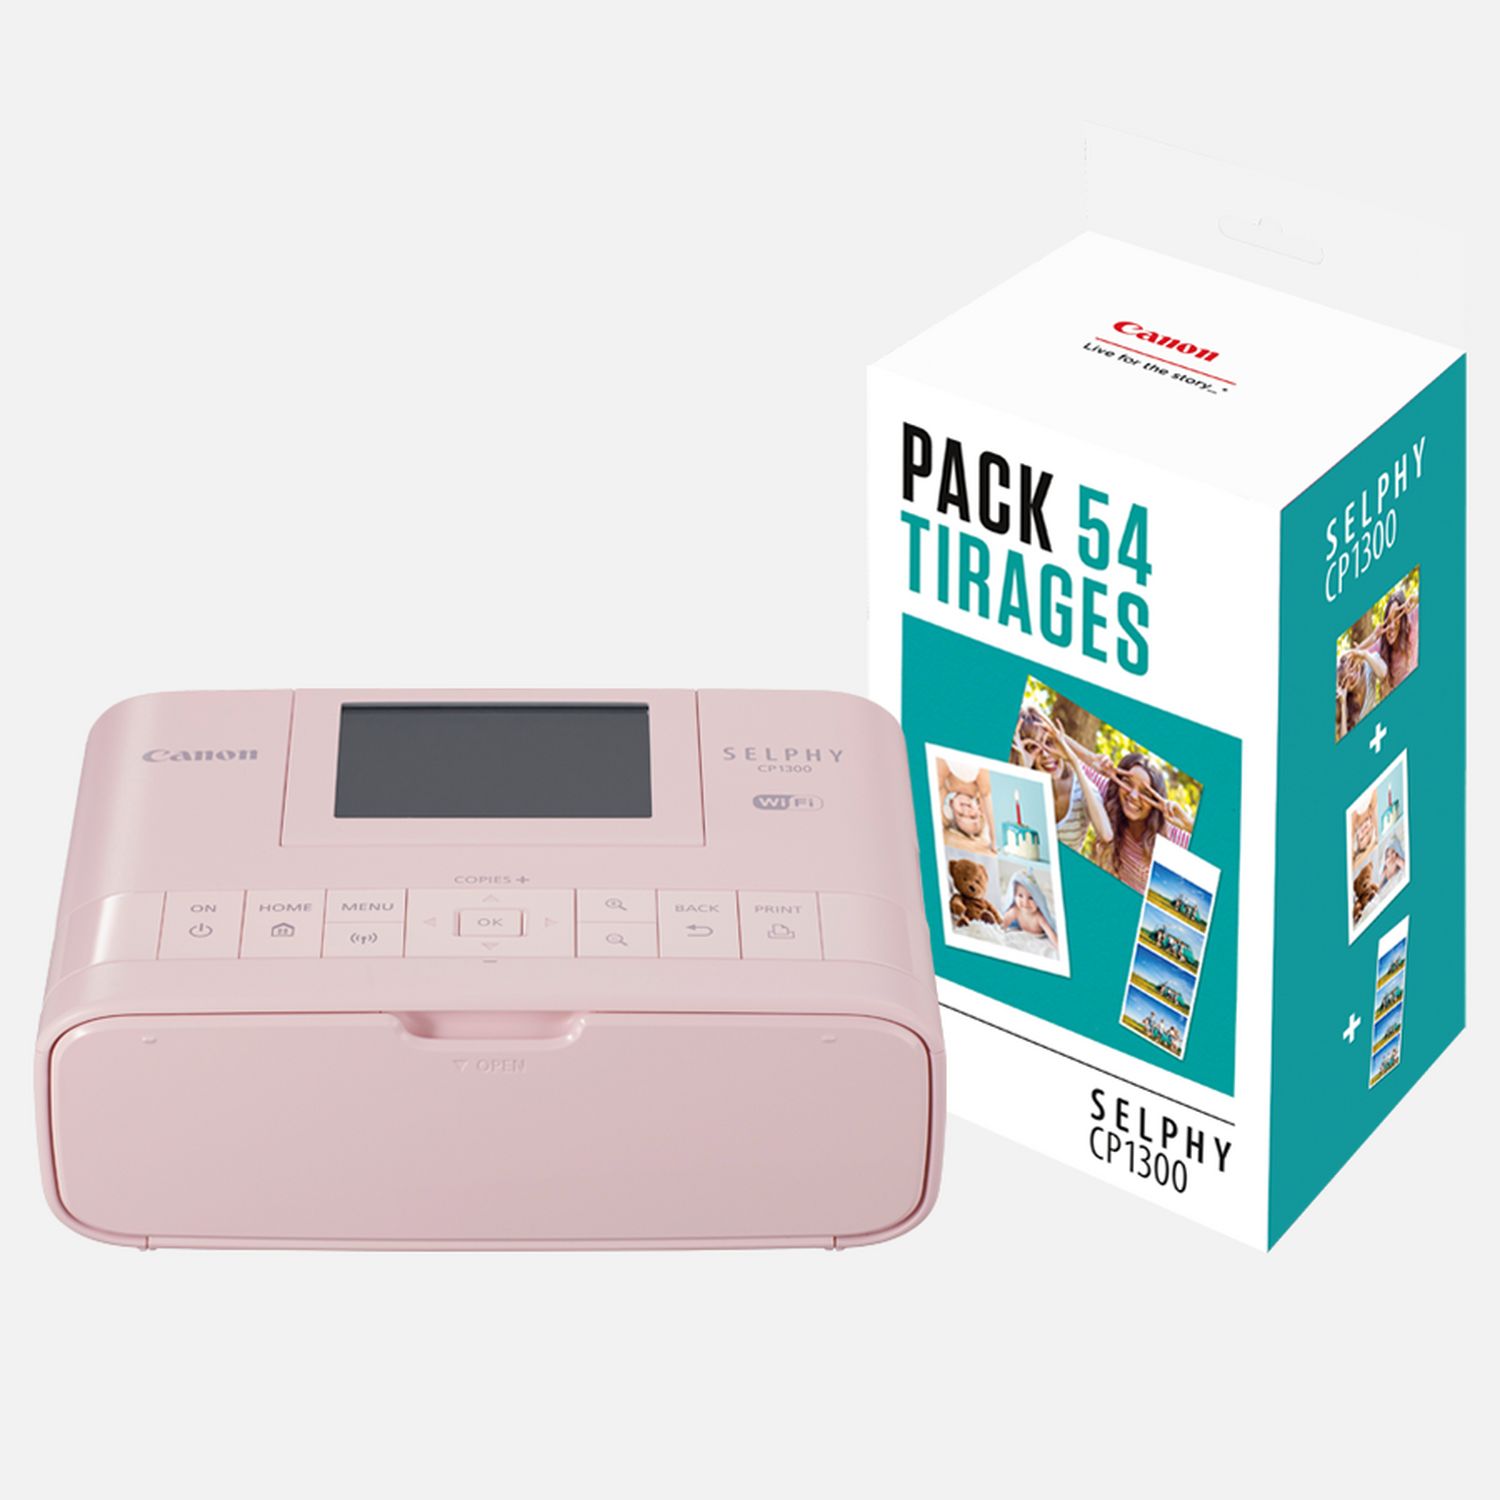 Image of Stampante fotografica portatile Canon SELPHY CP1300 a colori, rosa + Set inchiostro colore/carta